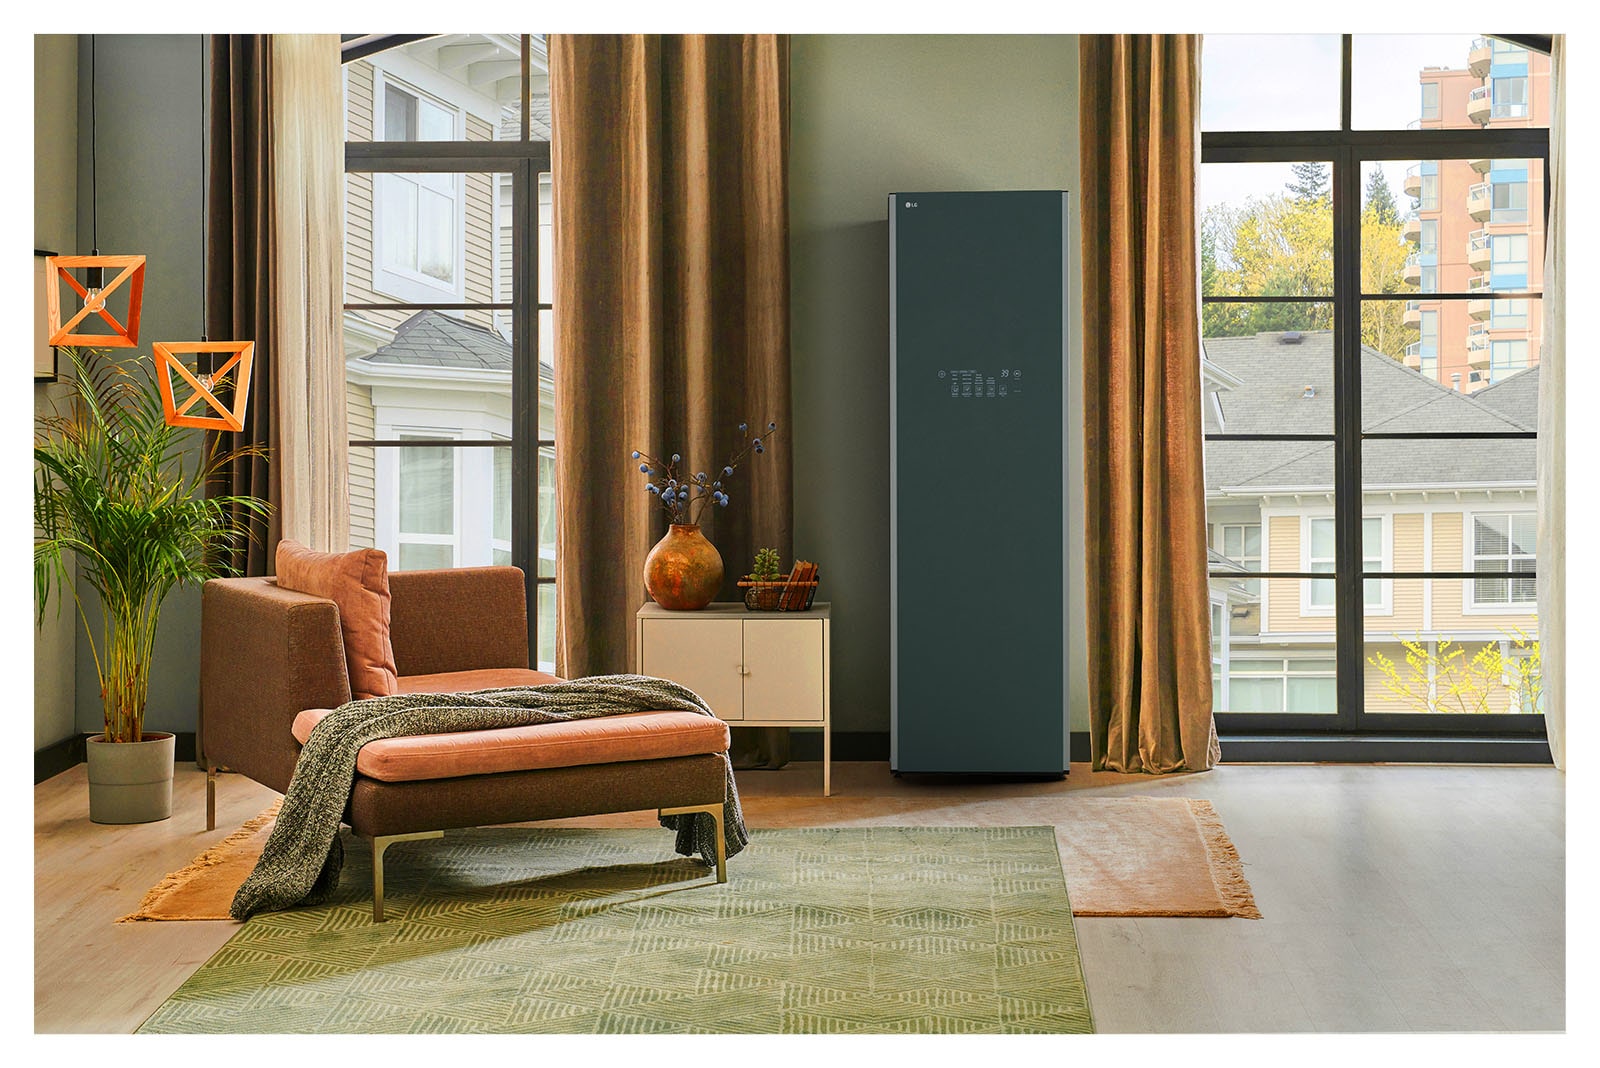 Hình ảnh tủ chăm sóc quần áo LG Styler Objet Collection màu be sương mờ đặt trong phòng thay đồ và hòa hợp một cách tự nhiên với đồ nội thất xung quanh.